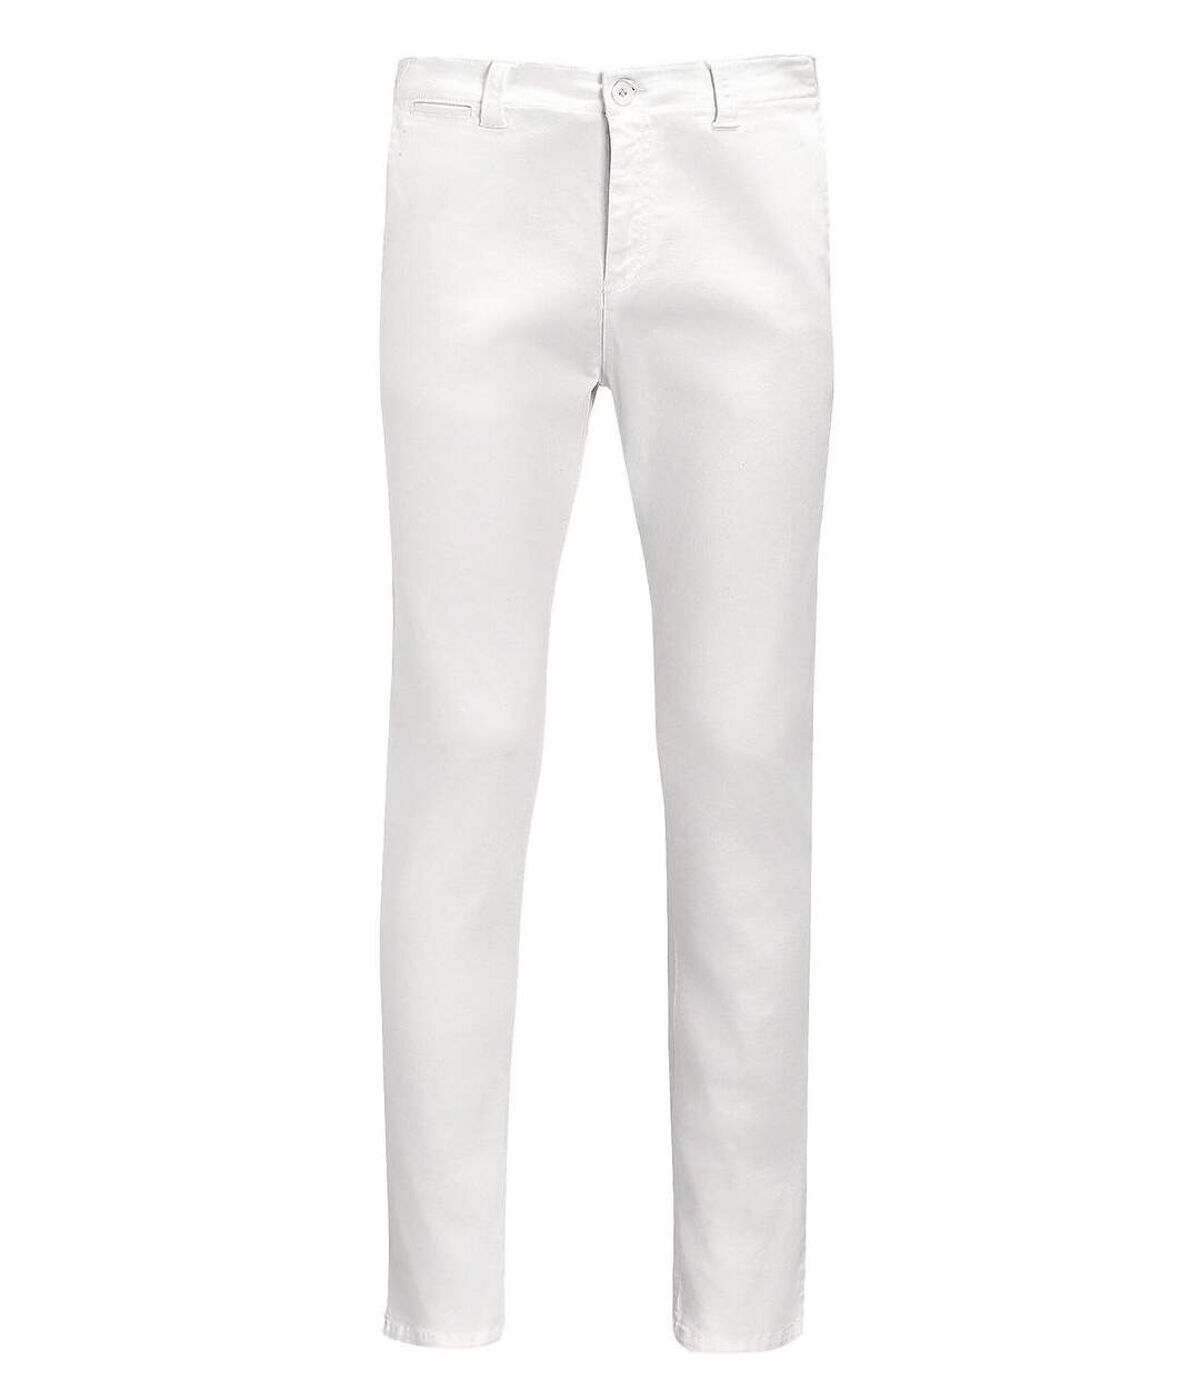 pantalon toile stretch homme - 01424 L33 - blanc